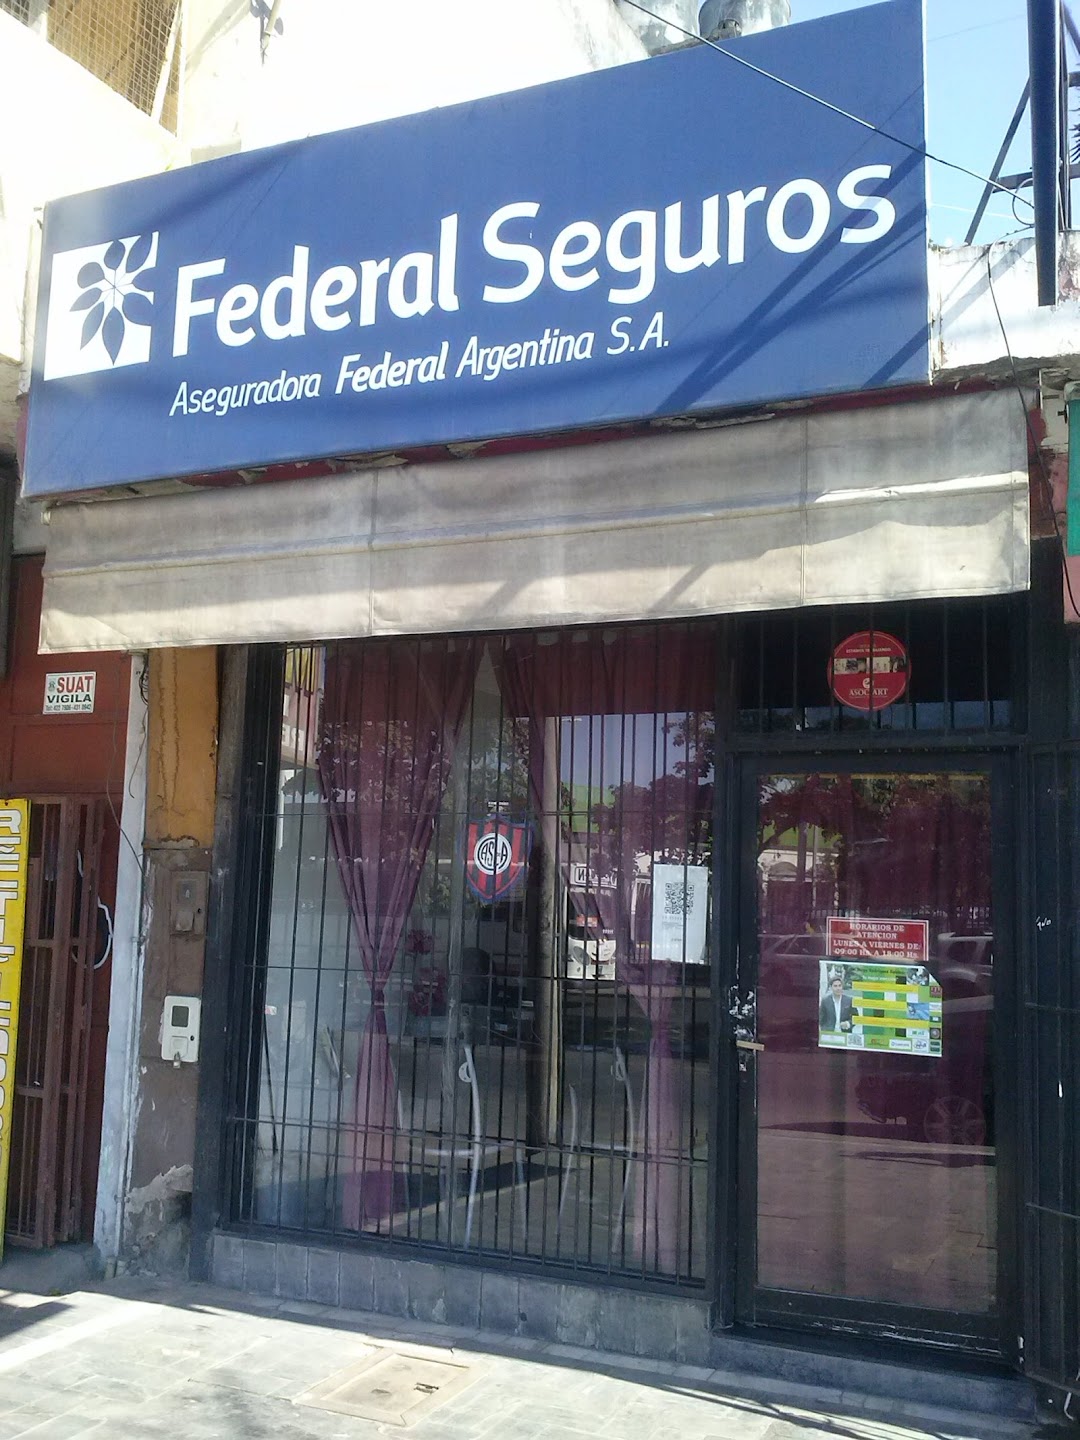 Federal Seguros Aseguradora Federal Argentina S.A.